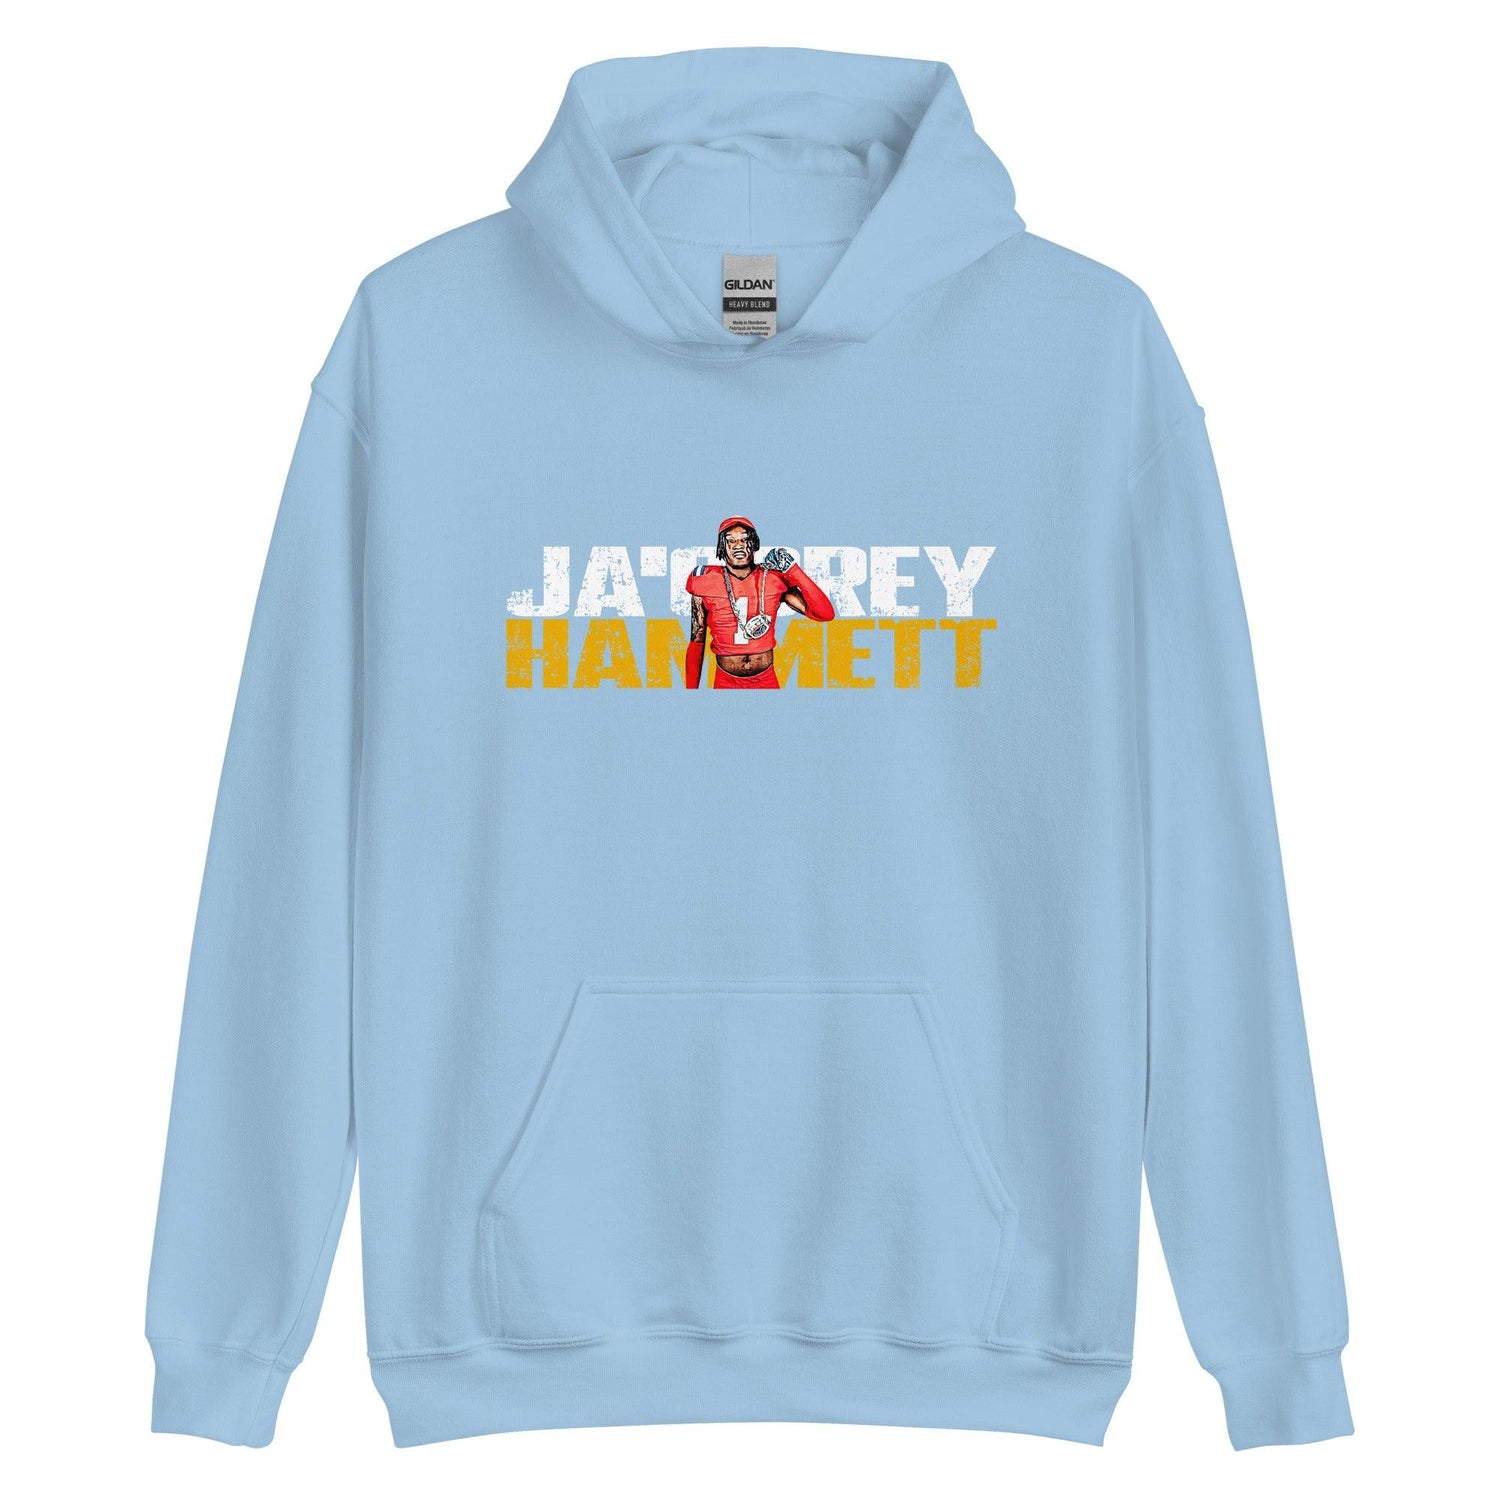 JaCorey Hammett "Gameday" Hoodie - Fan Arch